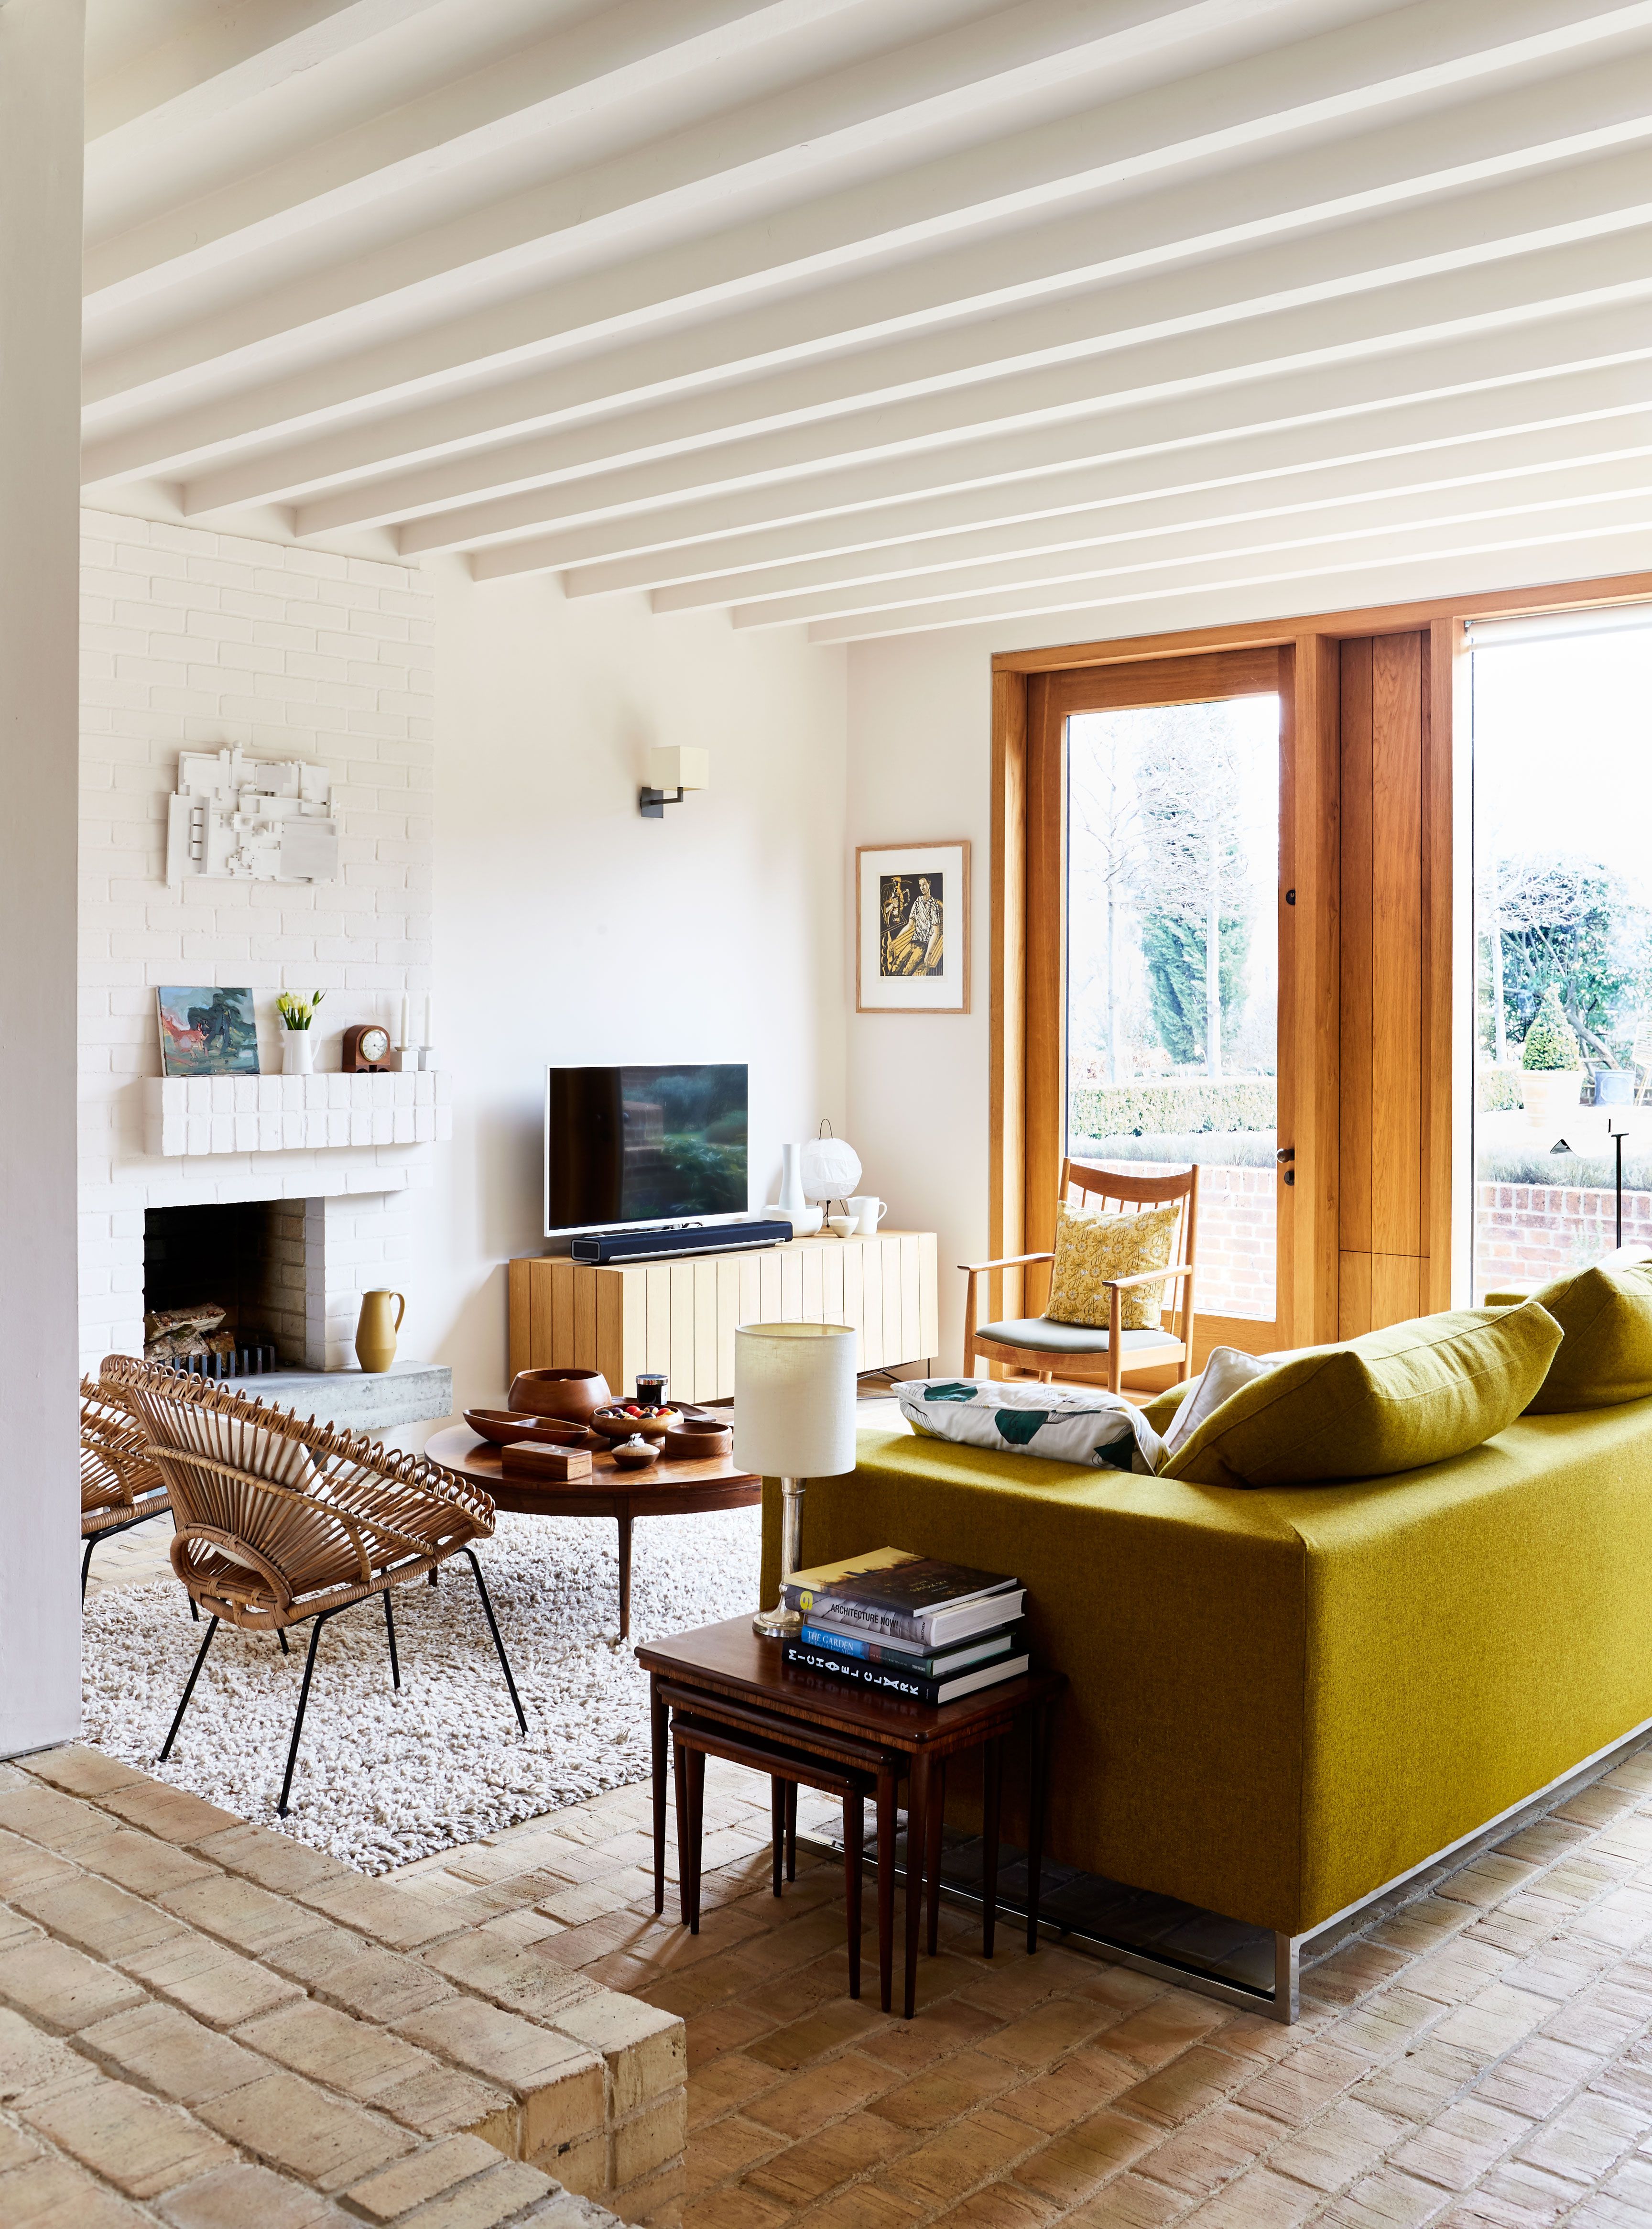 13 Inspirational Living Room Ideas - Living Room Design